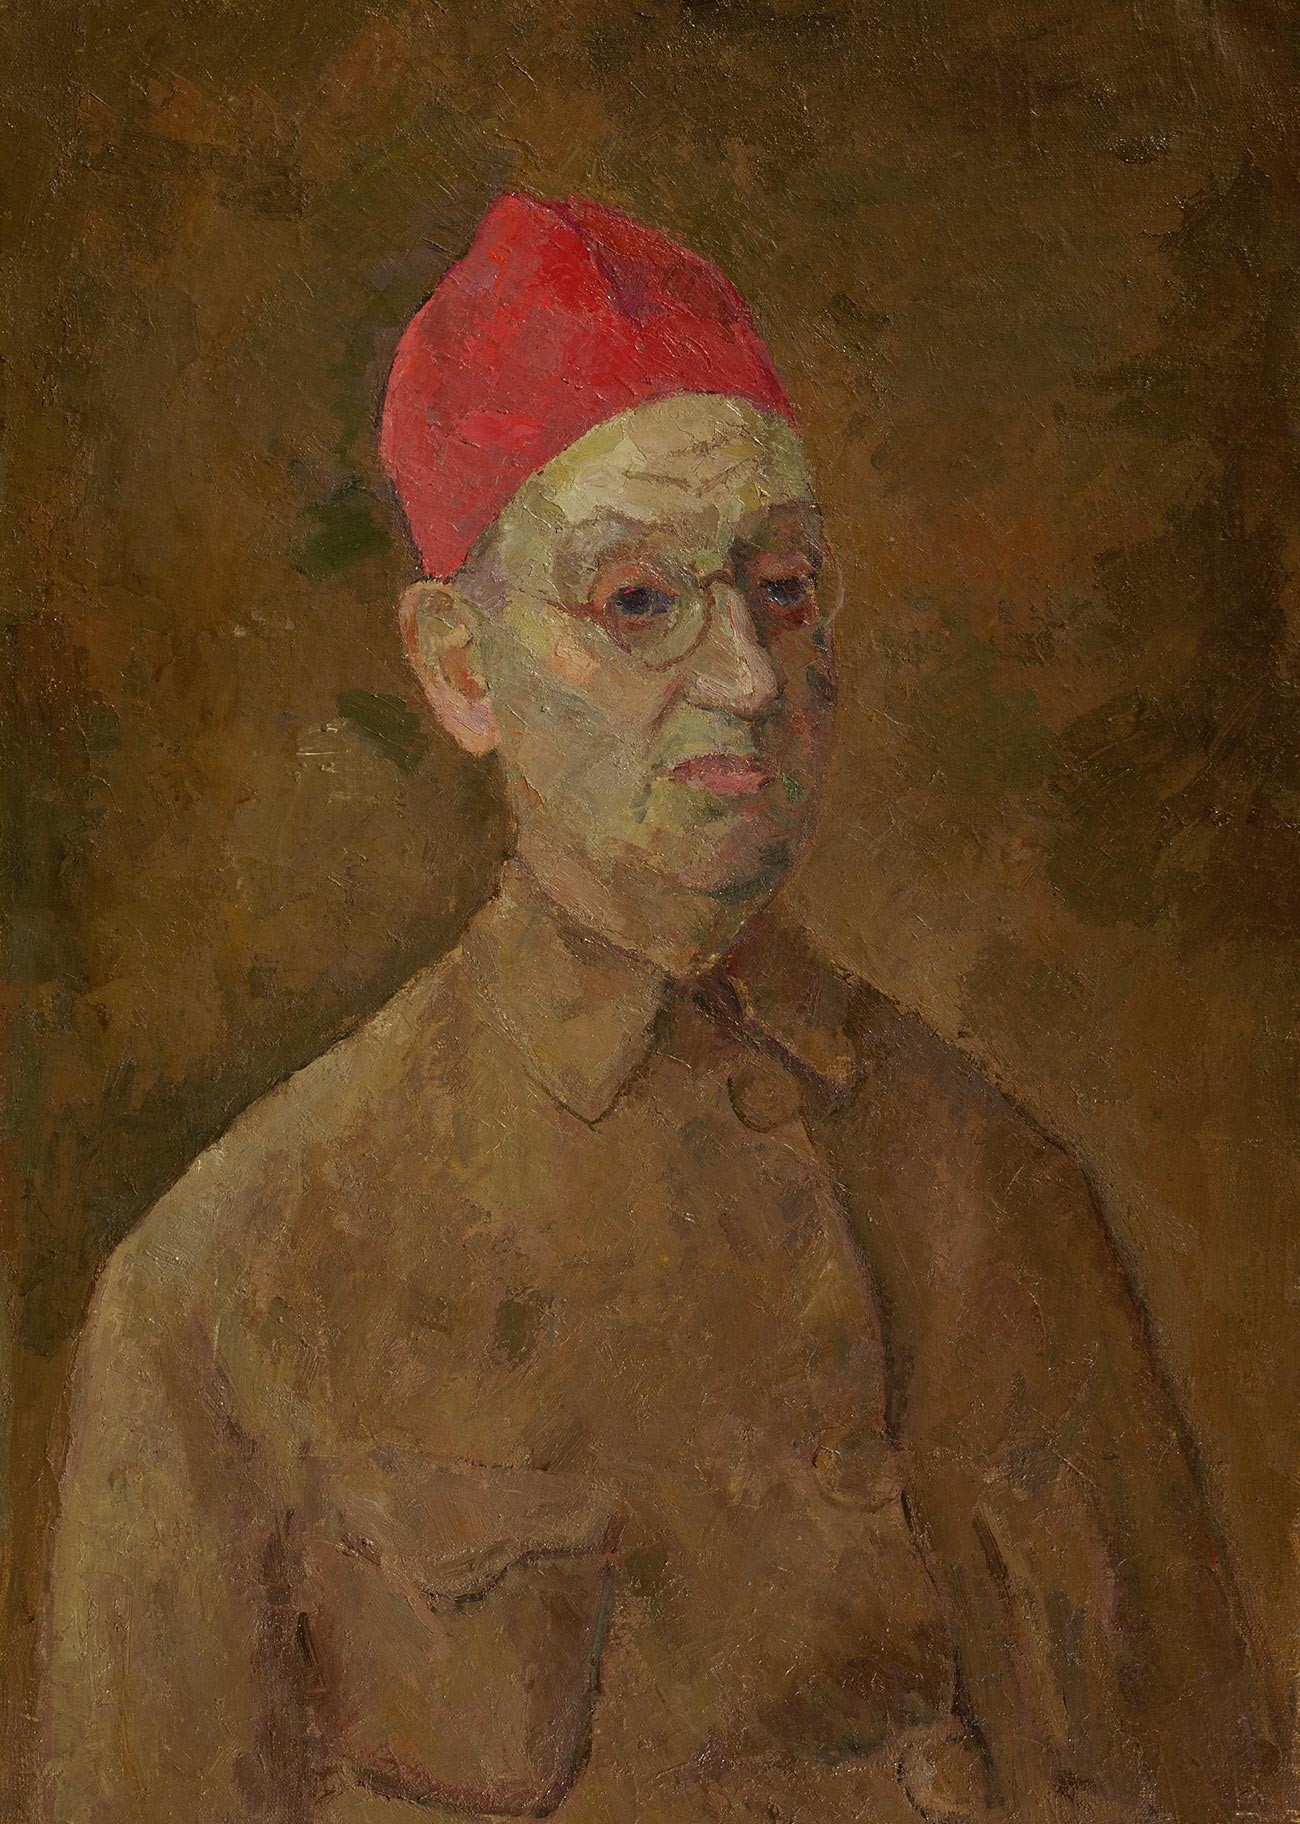 ロベルト・ファリク、赤いトルコ帽をかぶった自画像、1957年